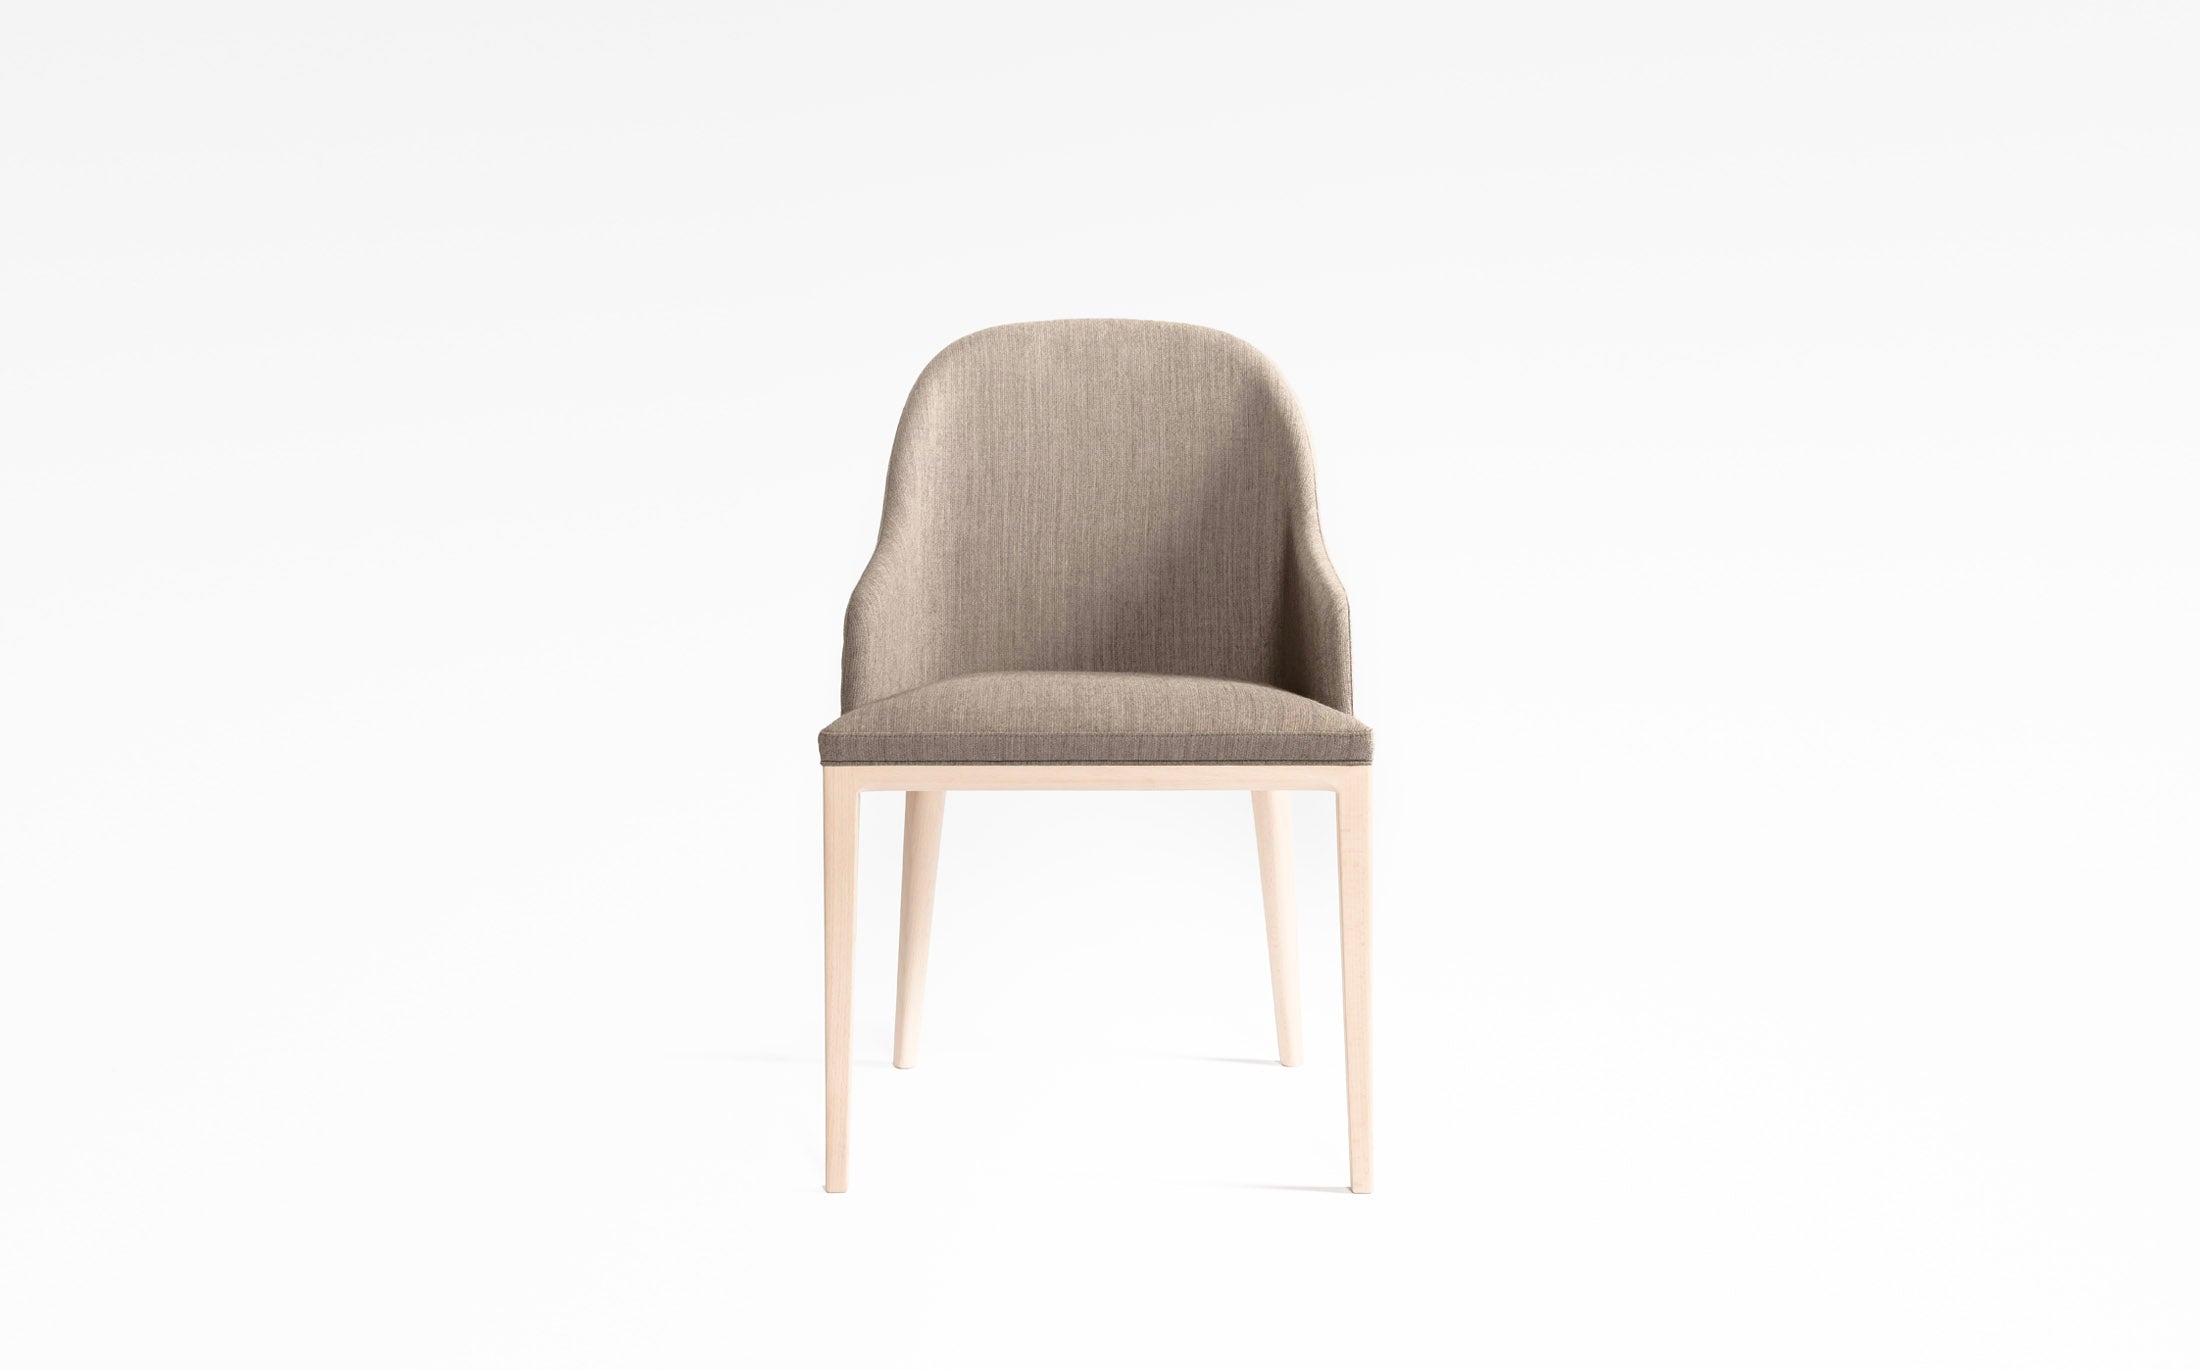 Philip half armchair #Seat materials_fabric1 riff 05/99